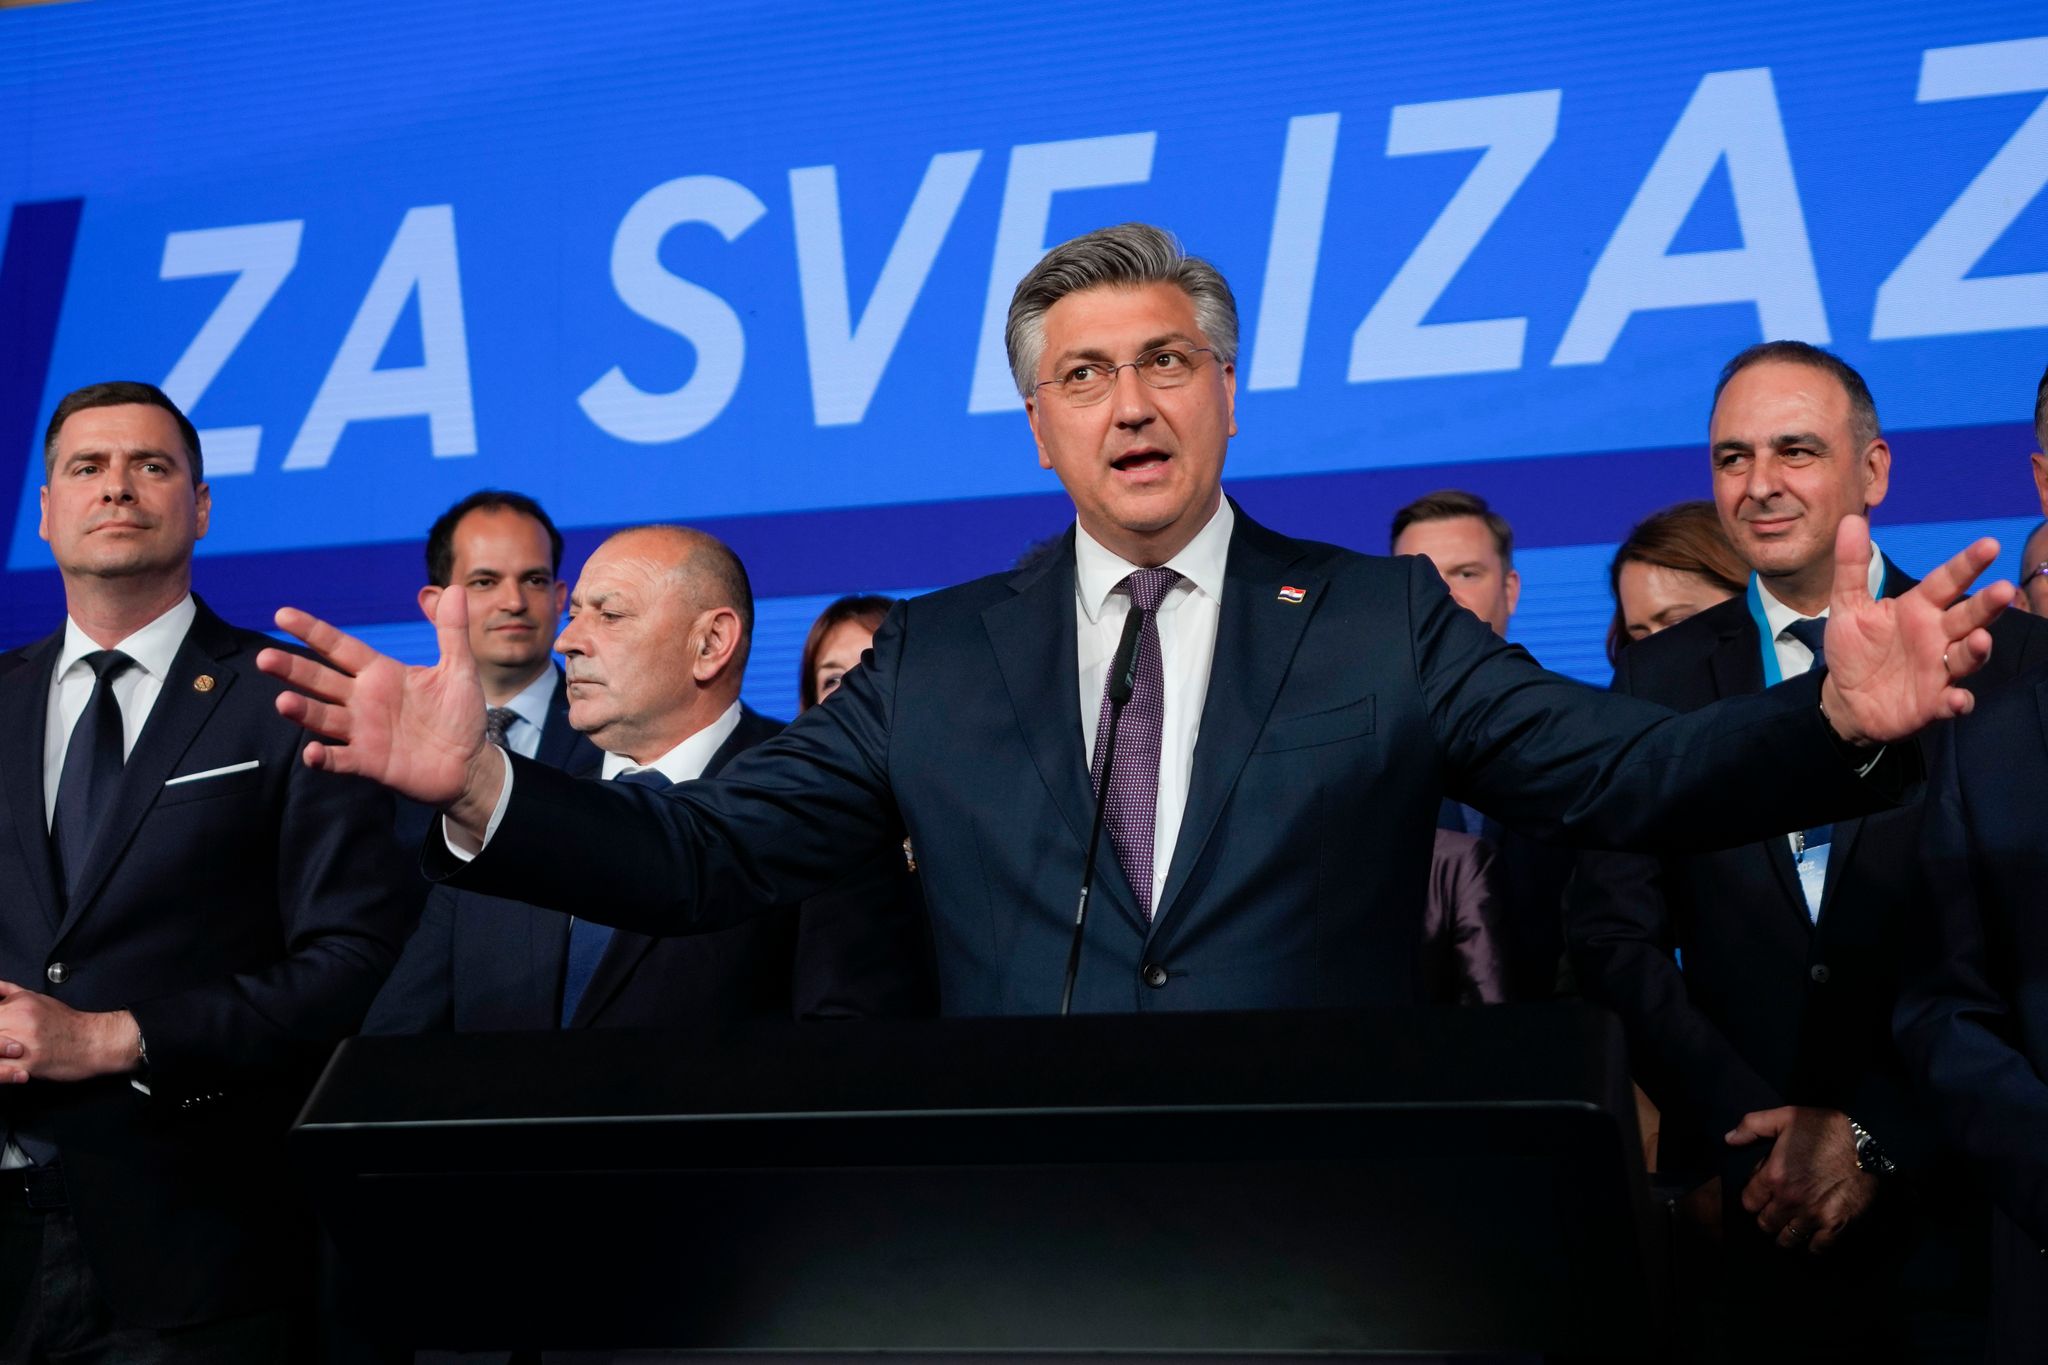 Ministerpräsident Andrej Plenkovic ist zur Fortsetzung der Regierung auf einen Koalitionspartner angewiesen.